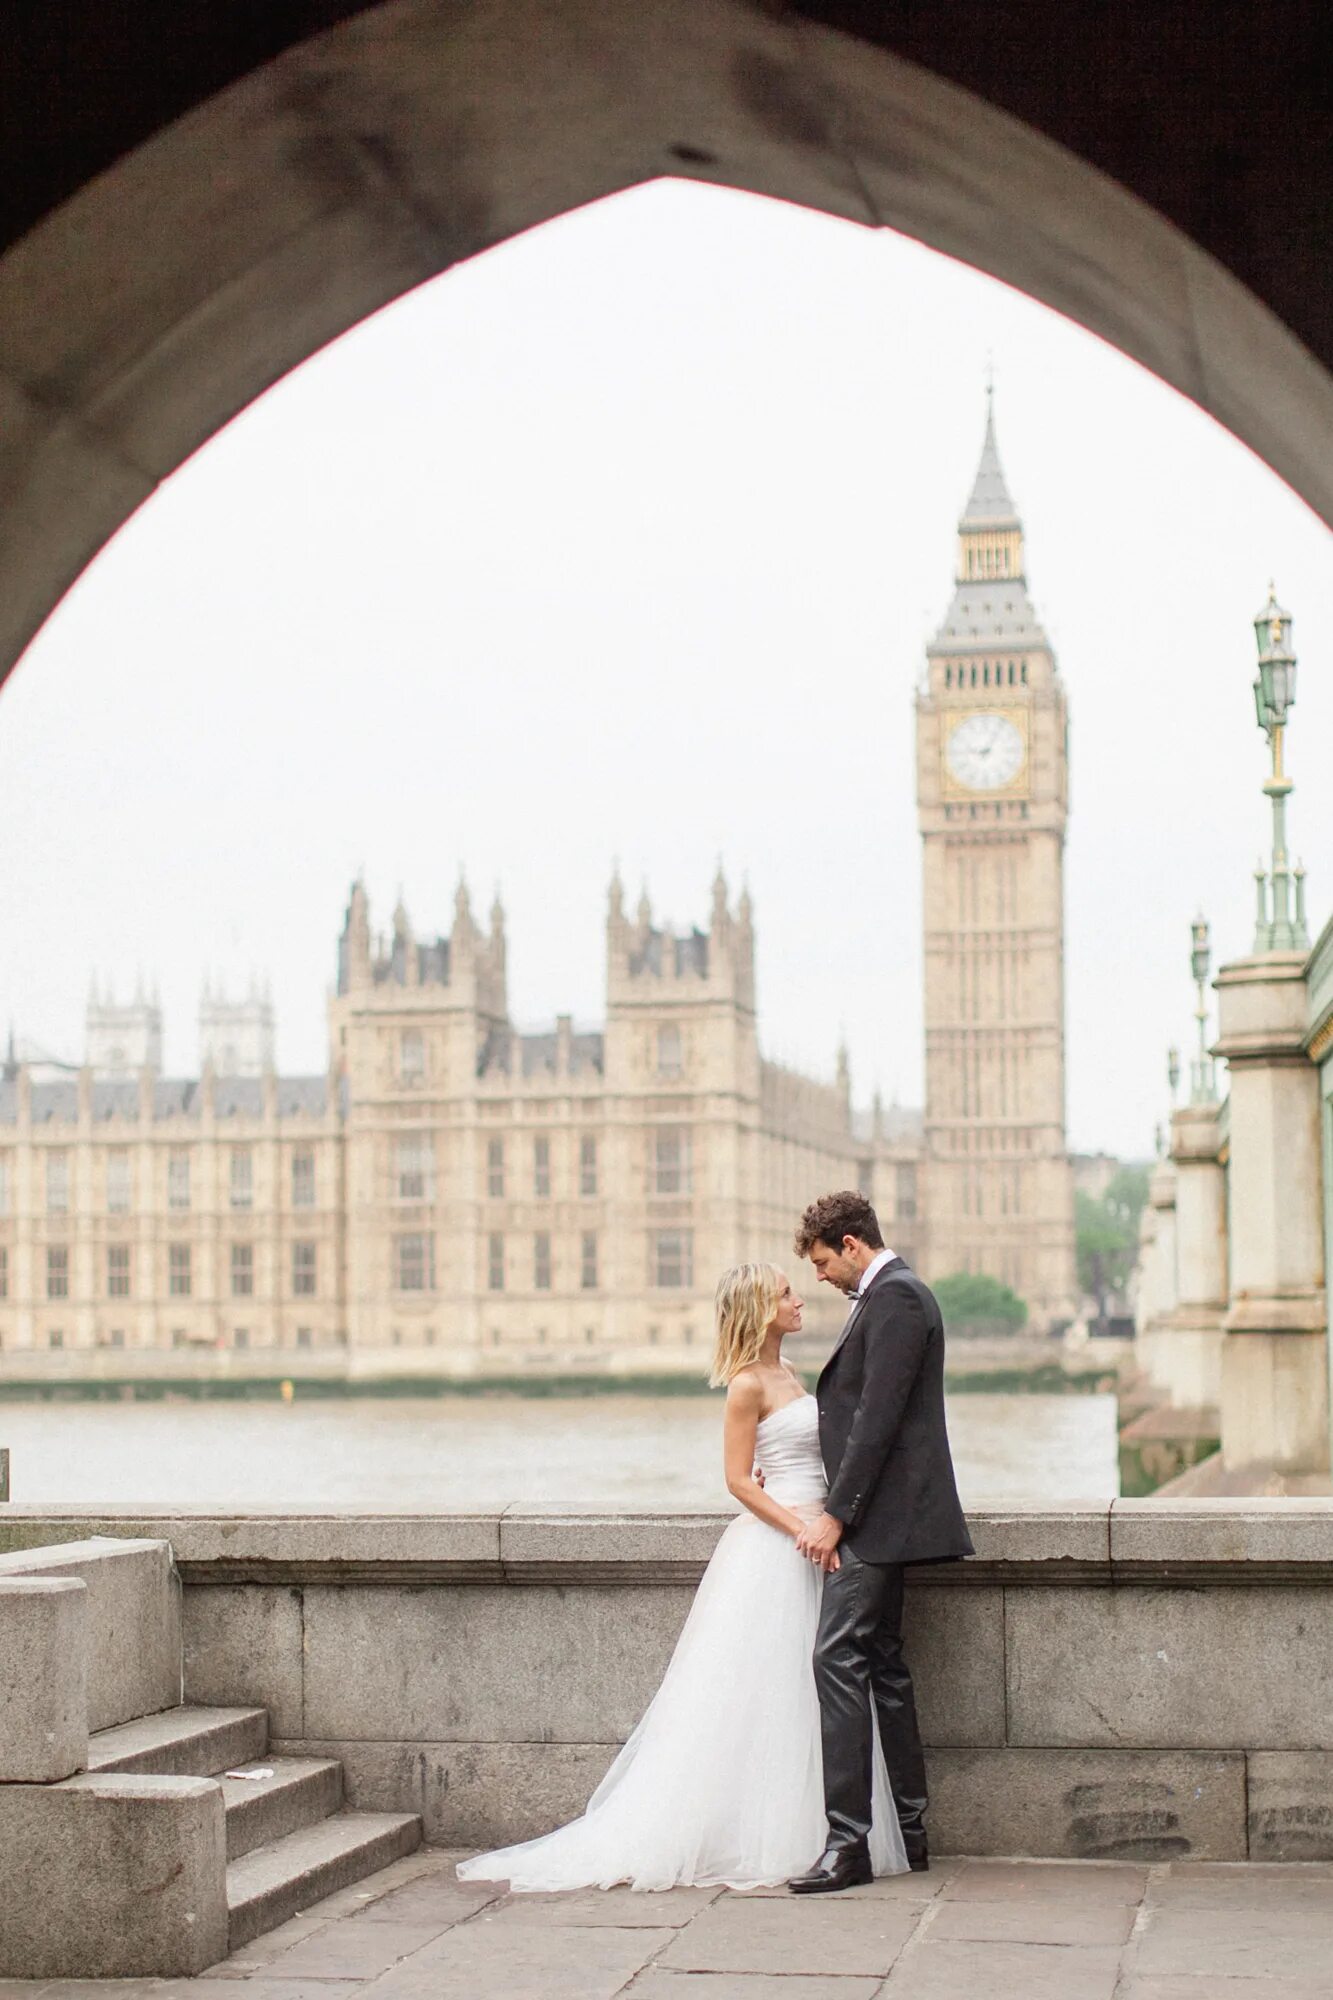 Двое в лондоне. Свадьба в Лондоне. Свадебная фотосессия в стиле Англия. Фотосессия Лондон. Влюбленные в Лондоне.